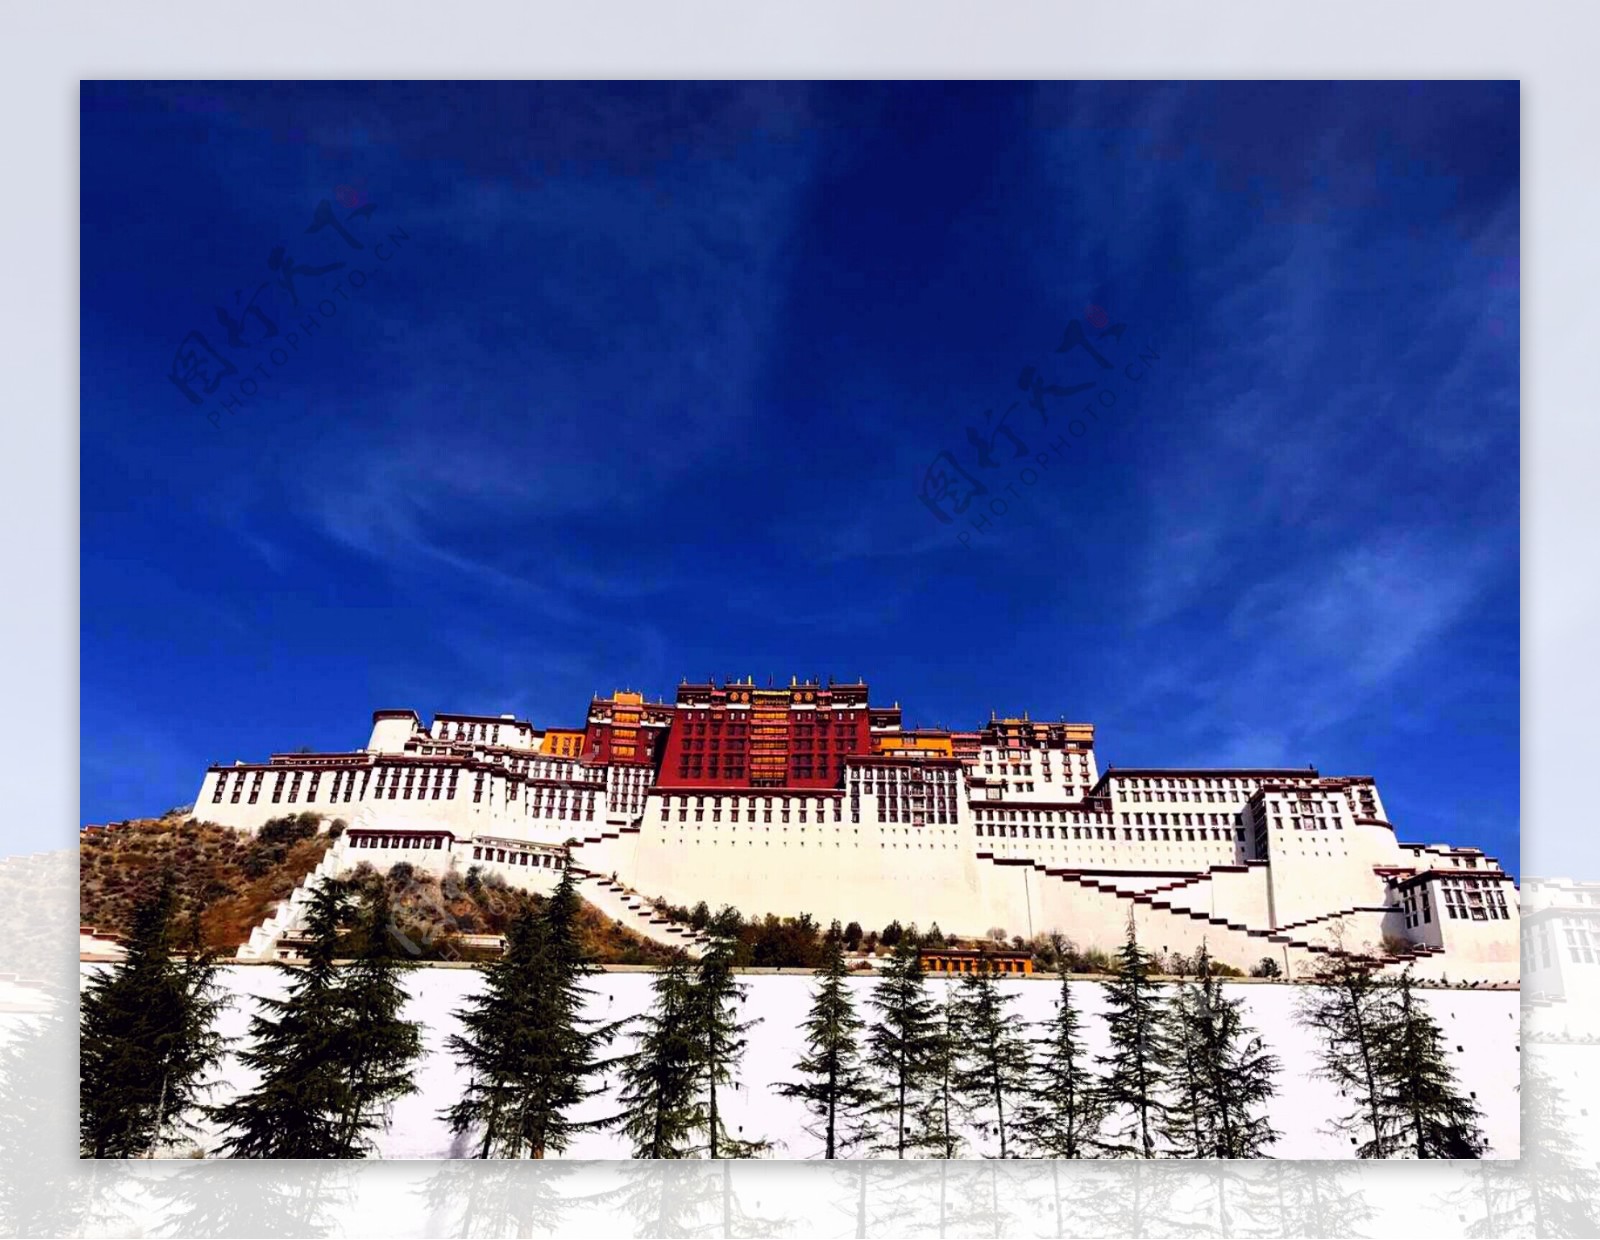 带你领略布达拉宫的秀美 西藏之行随拍(2)_器材频道-蜂鸟网